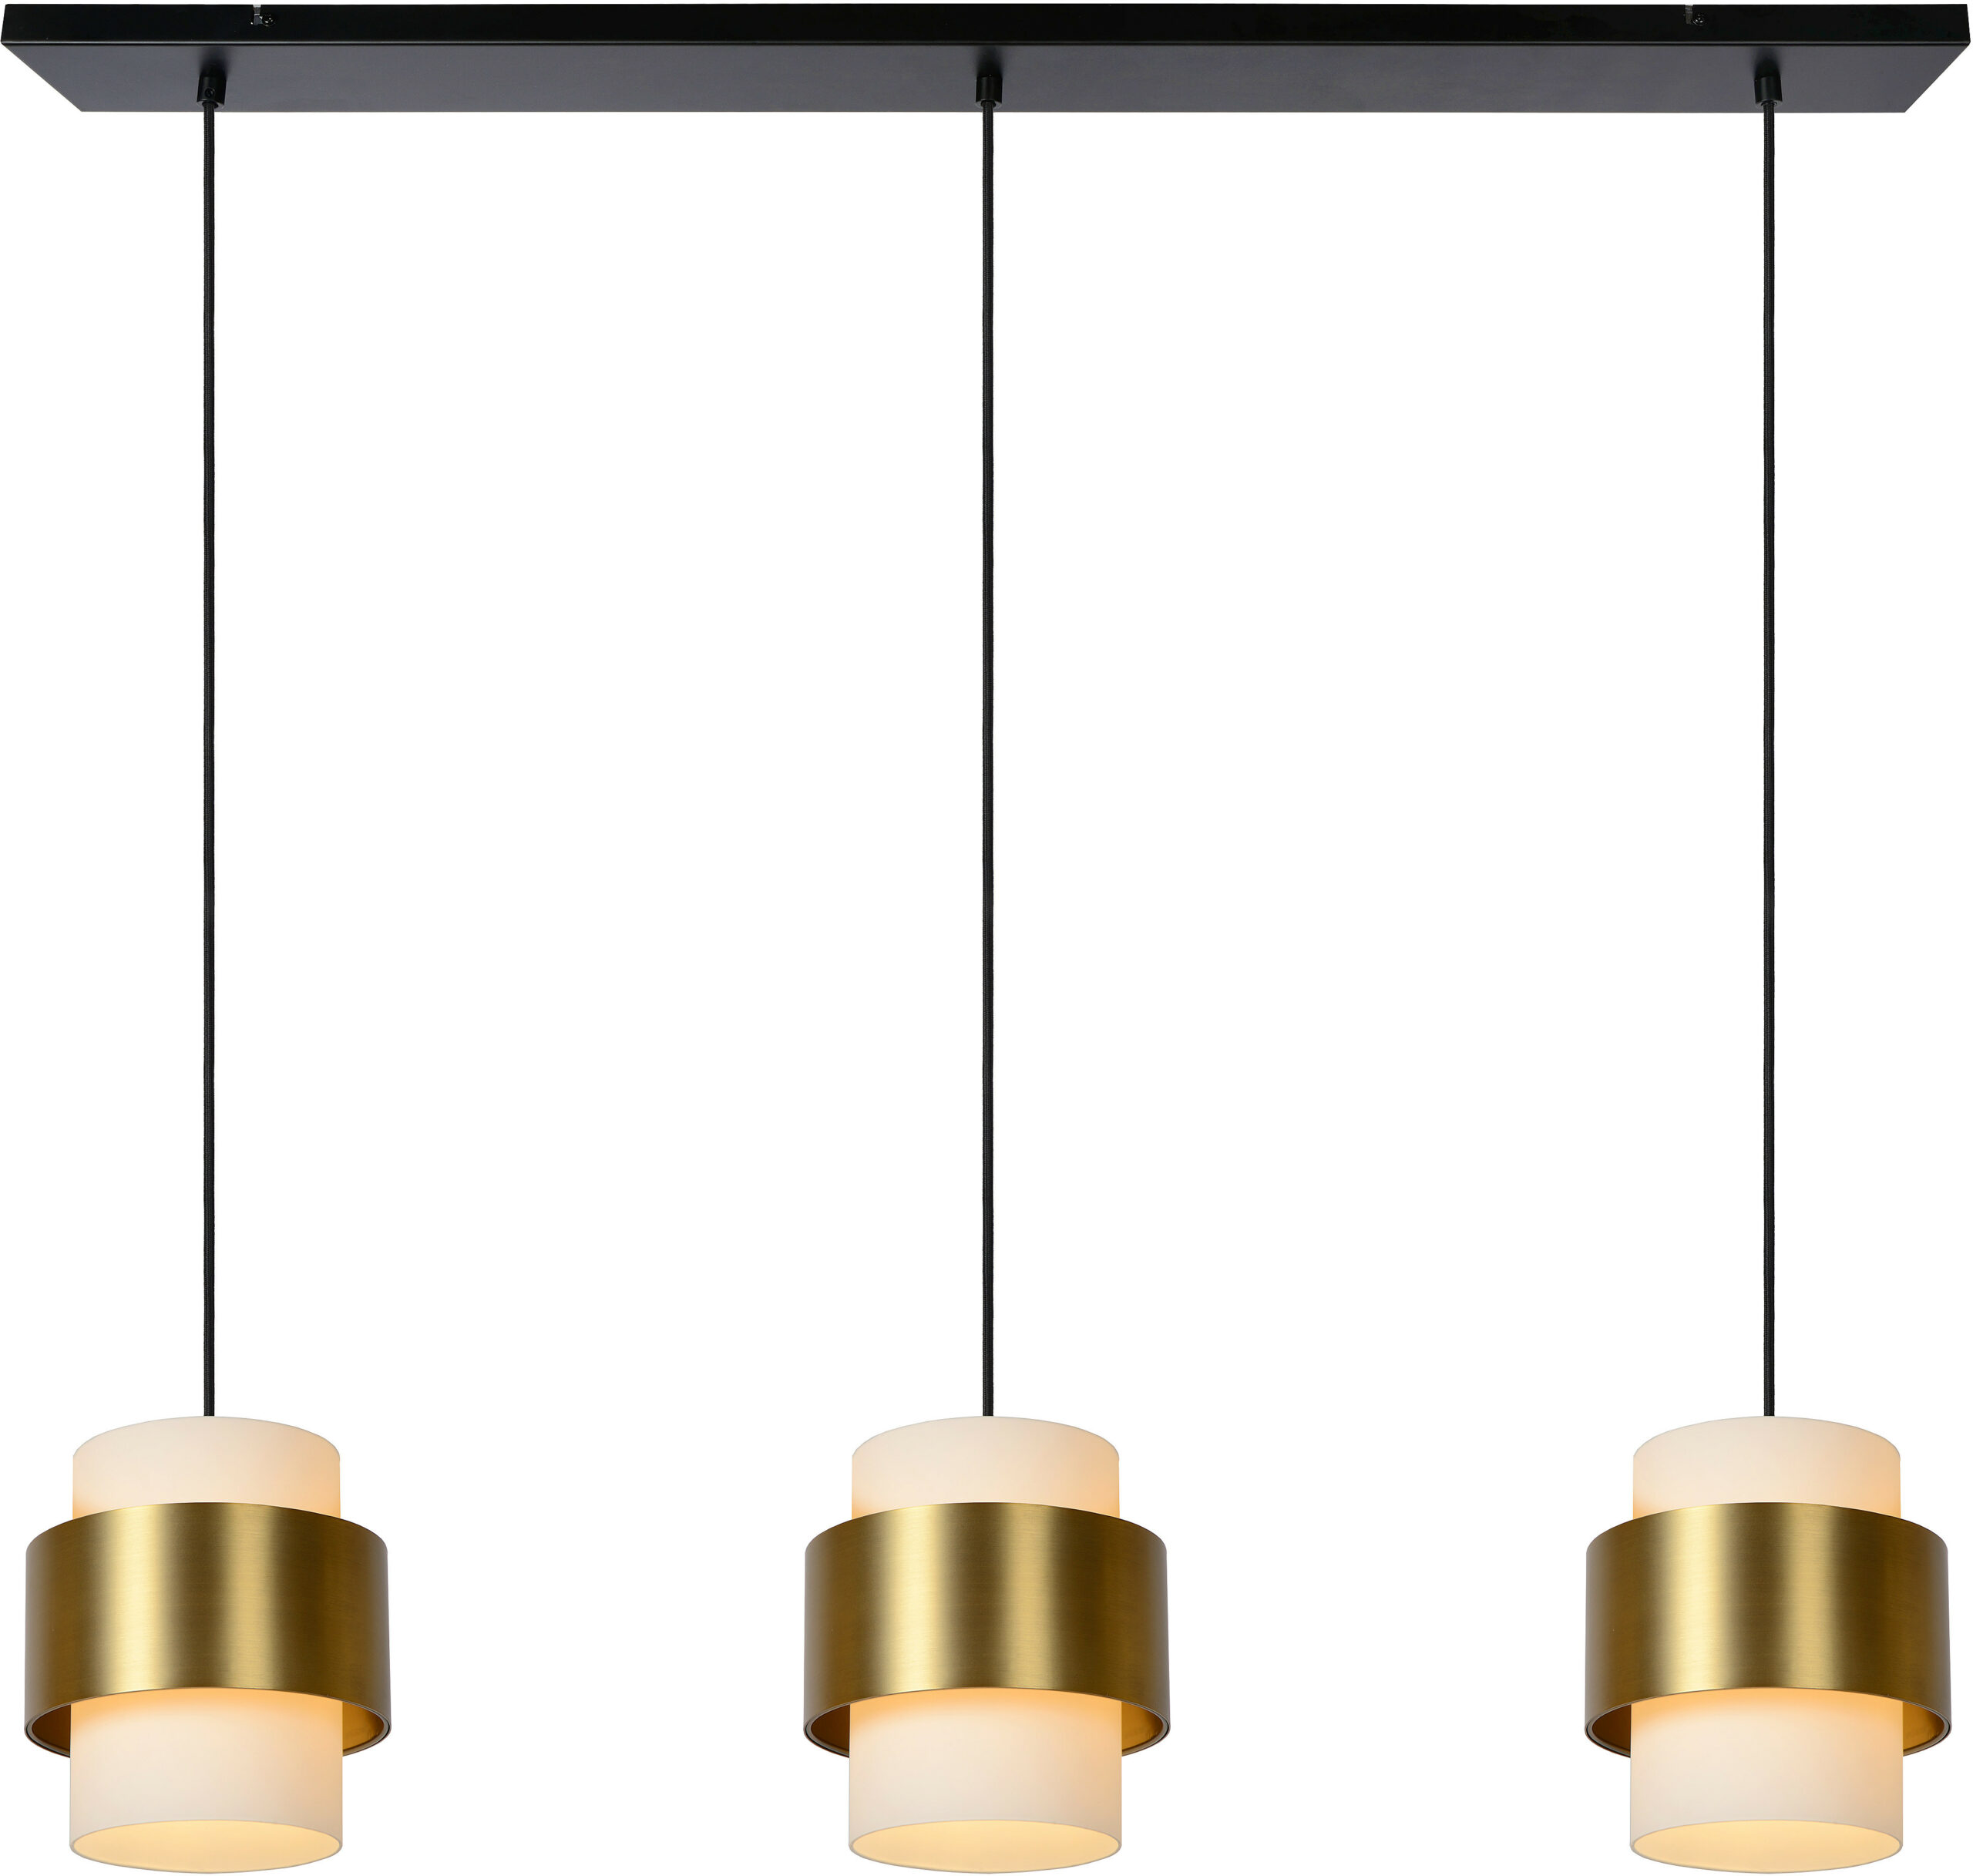 Firmin - Hanglamp - 3xe27 - Mat Goud / Messing Lucide Hanglamp 45497/03/02